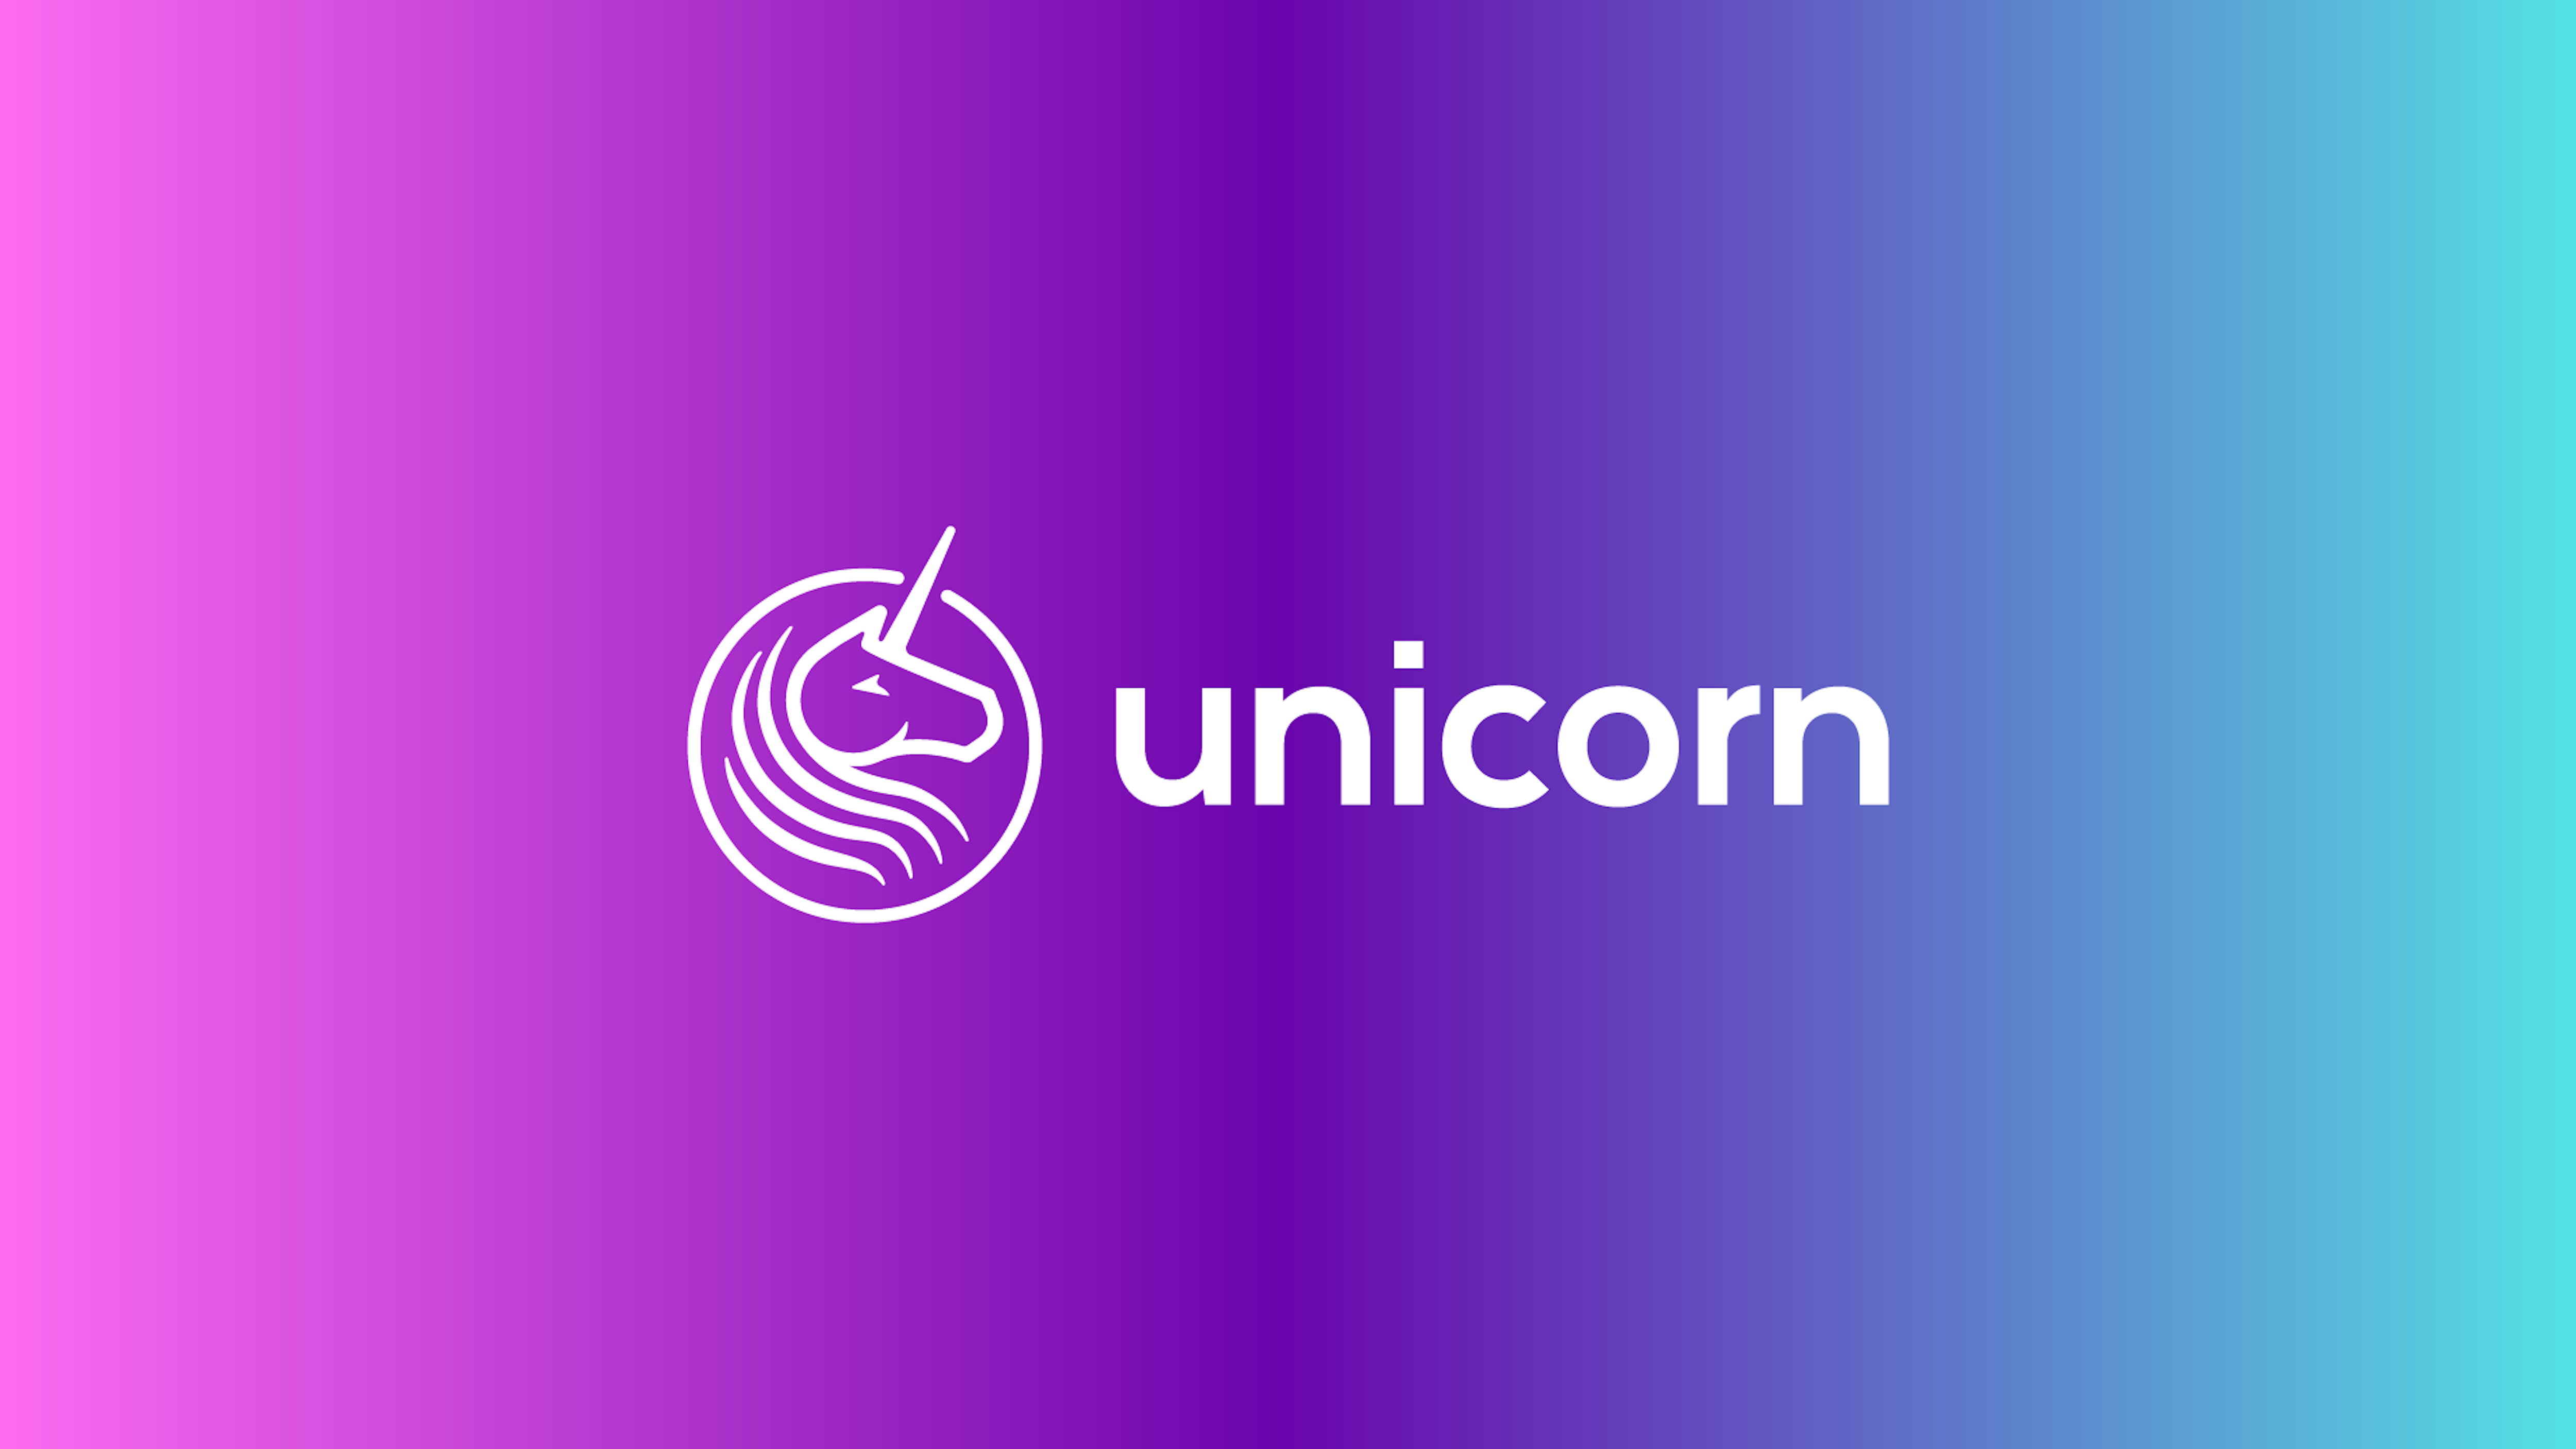 Unicorn logo and gradient